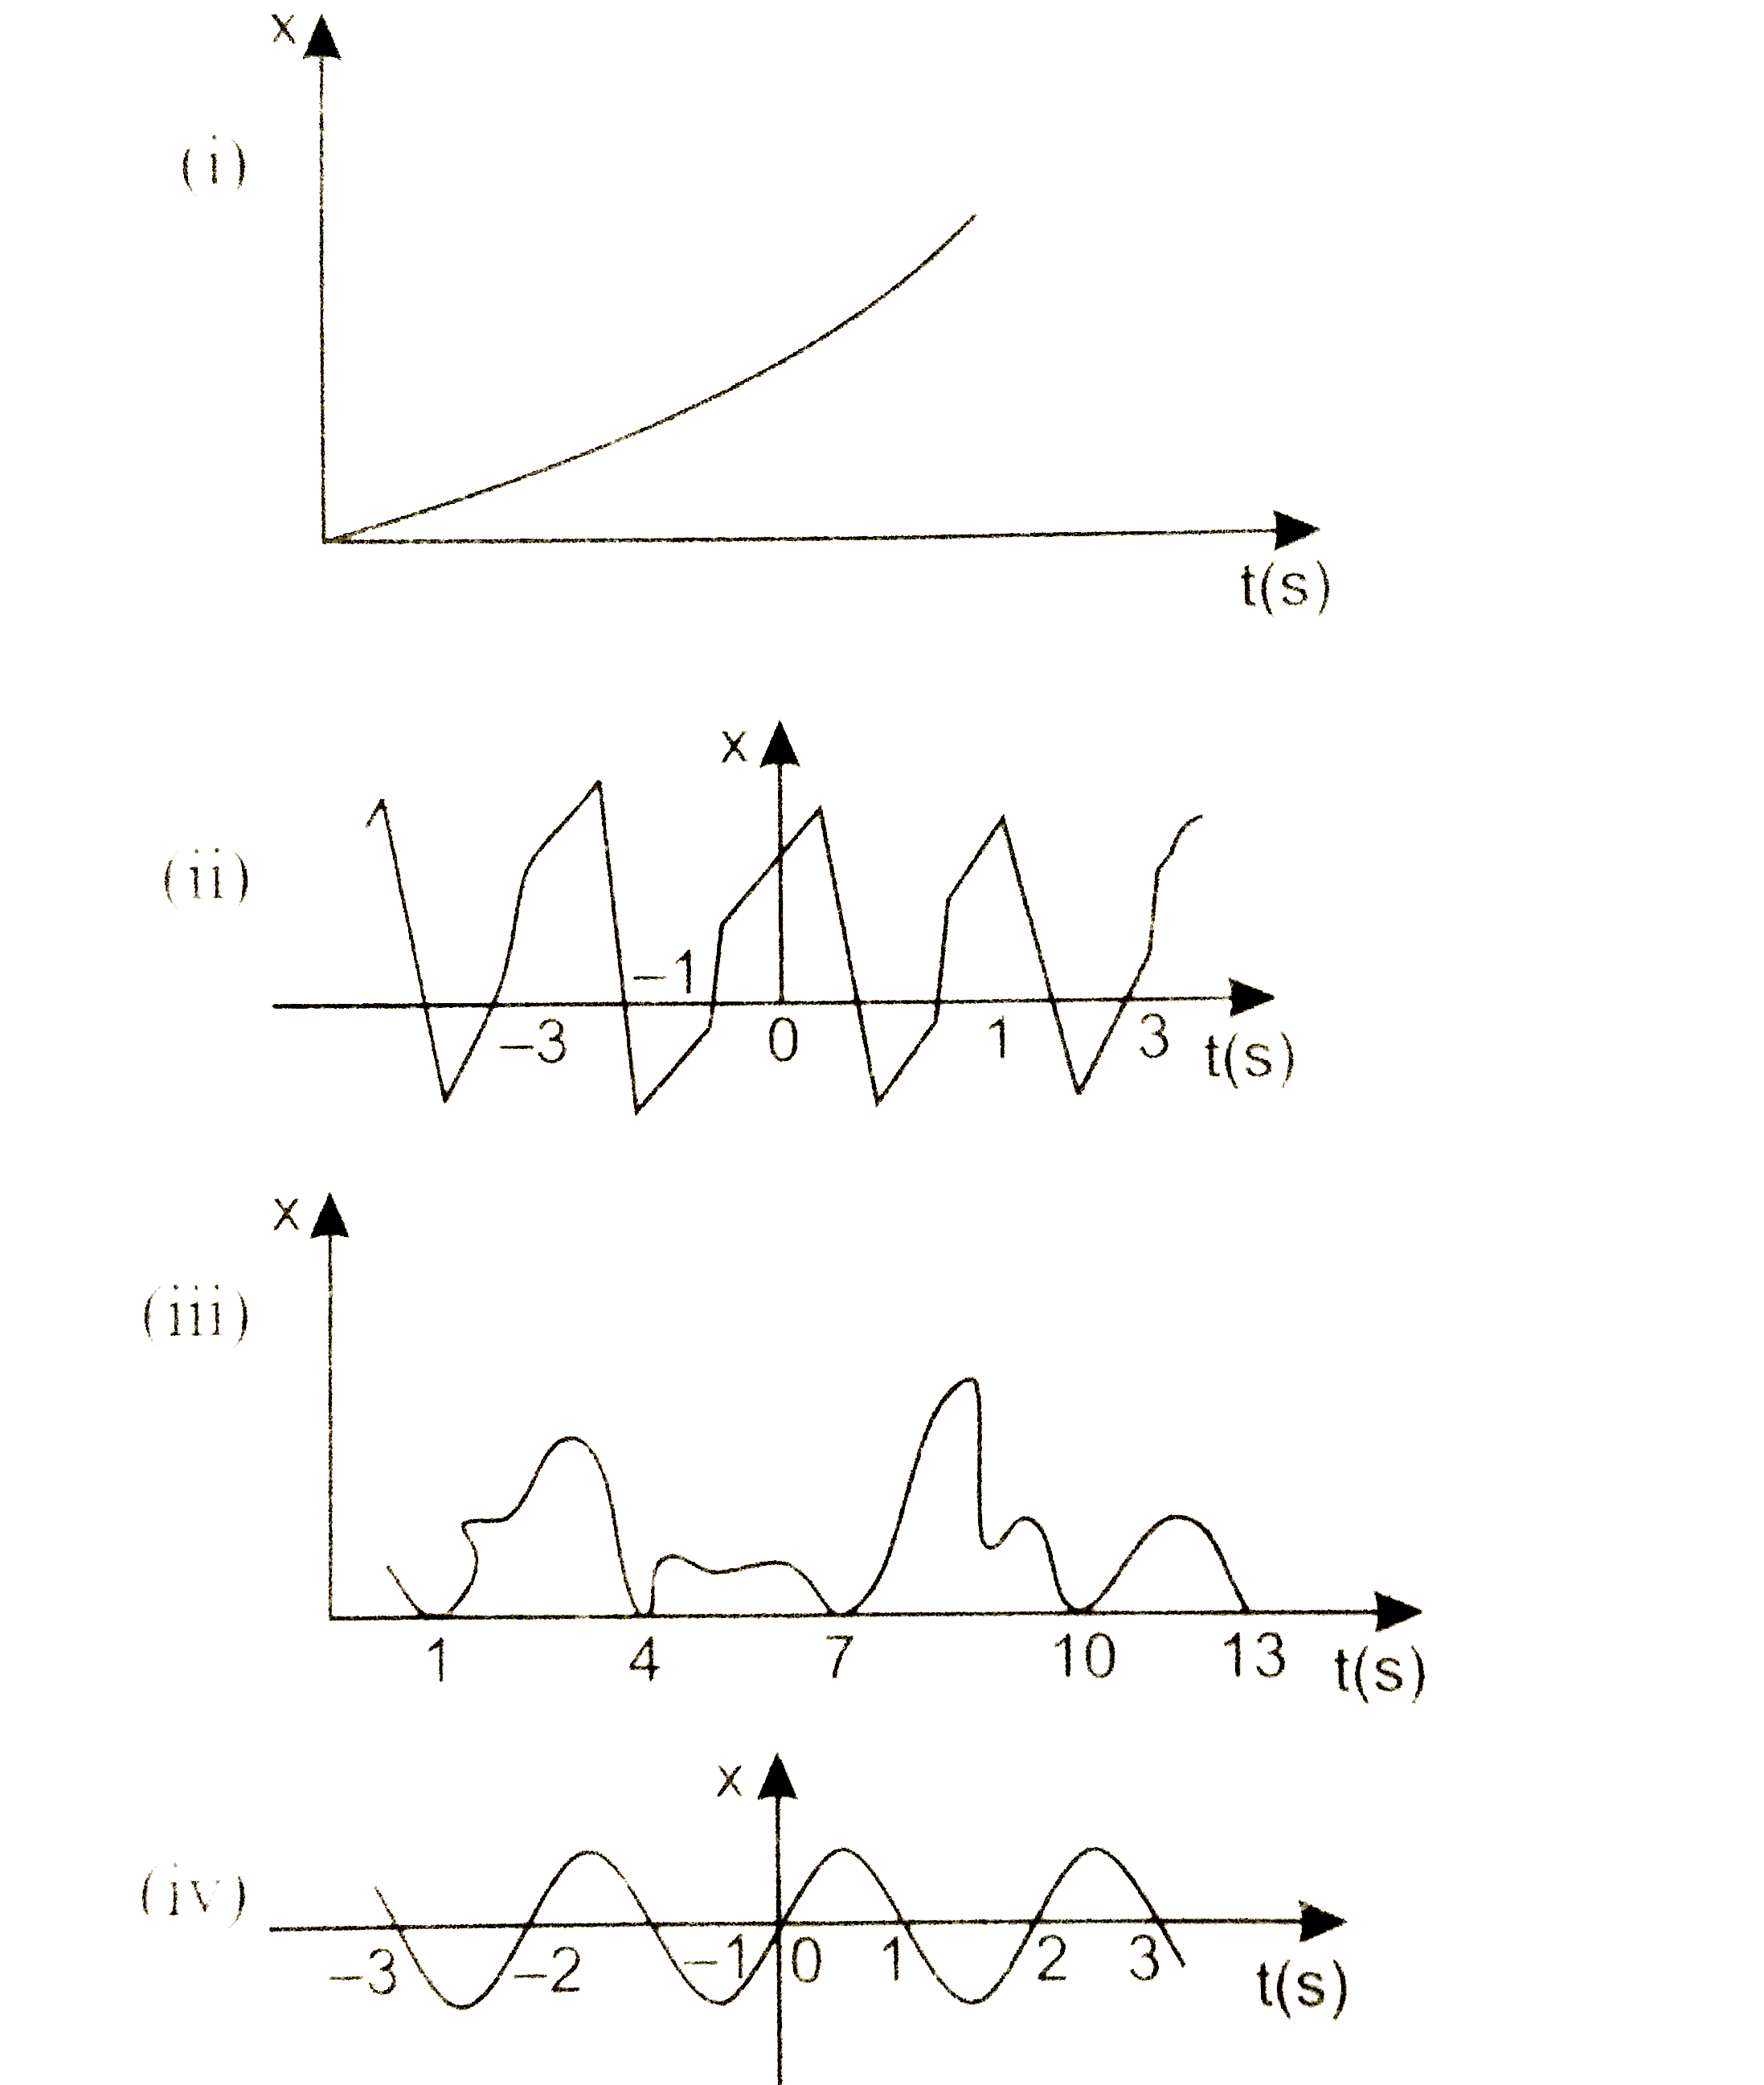 चित्र में किसी कण कि रैखिक गति के लिए चार  आरेख दिए गये है । इनमे से कौन - सा आरेख आवर्ती  गति का निरूपण  करता है ? उस गति का आवर्तकाल क्या है ( आवर्ती गति वाली गति का )?